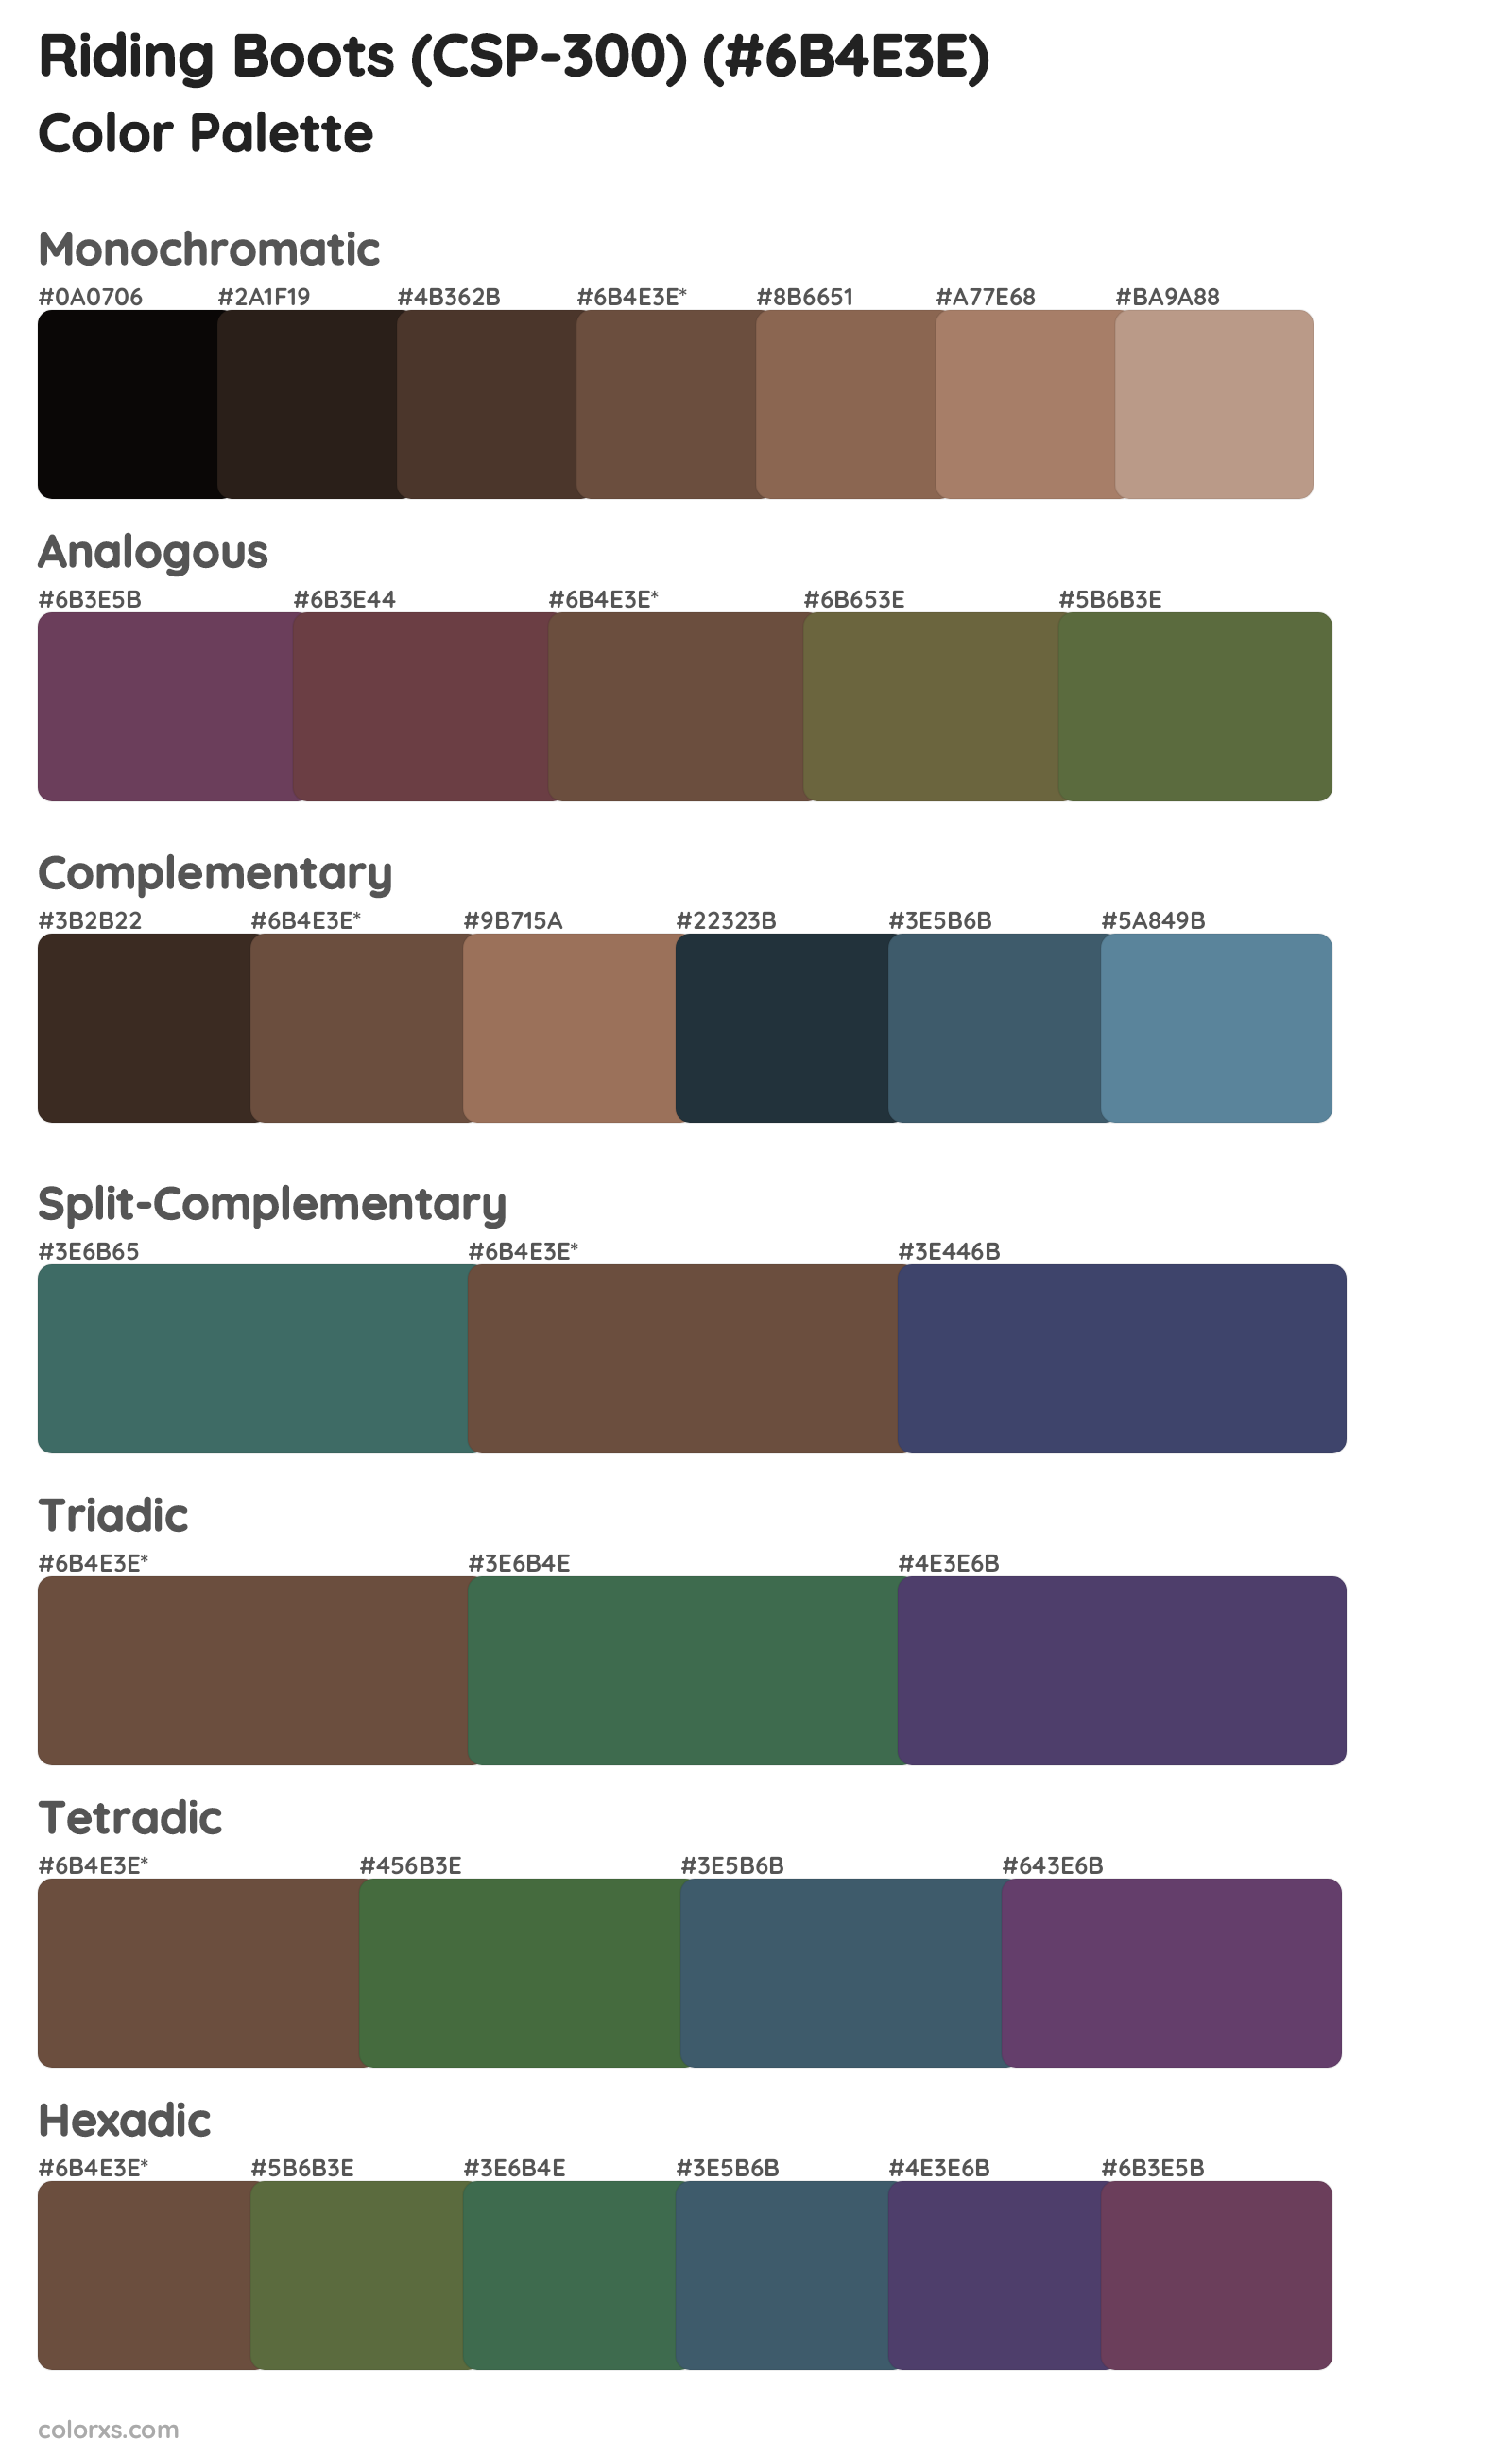 Riding Boots (CSP-300) Color Scheme Palettes